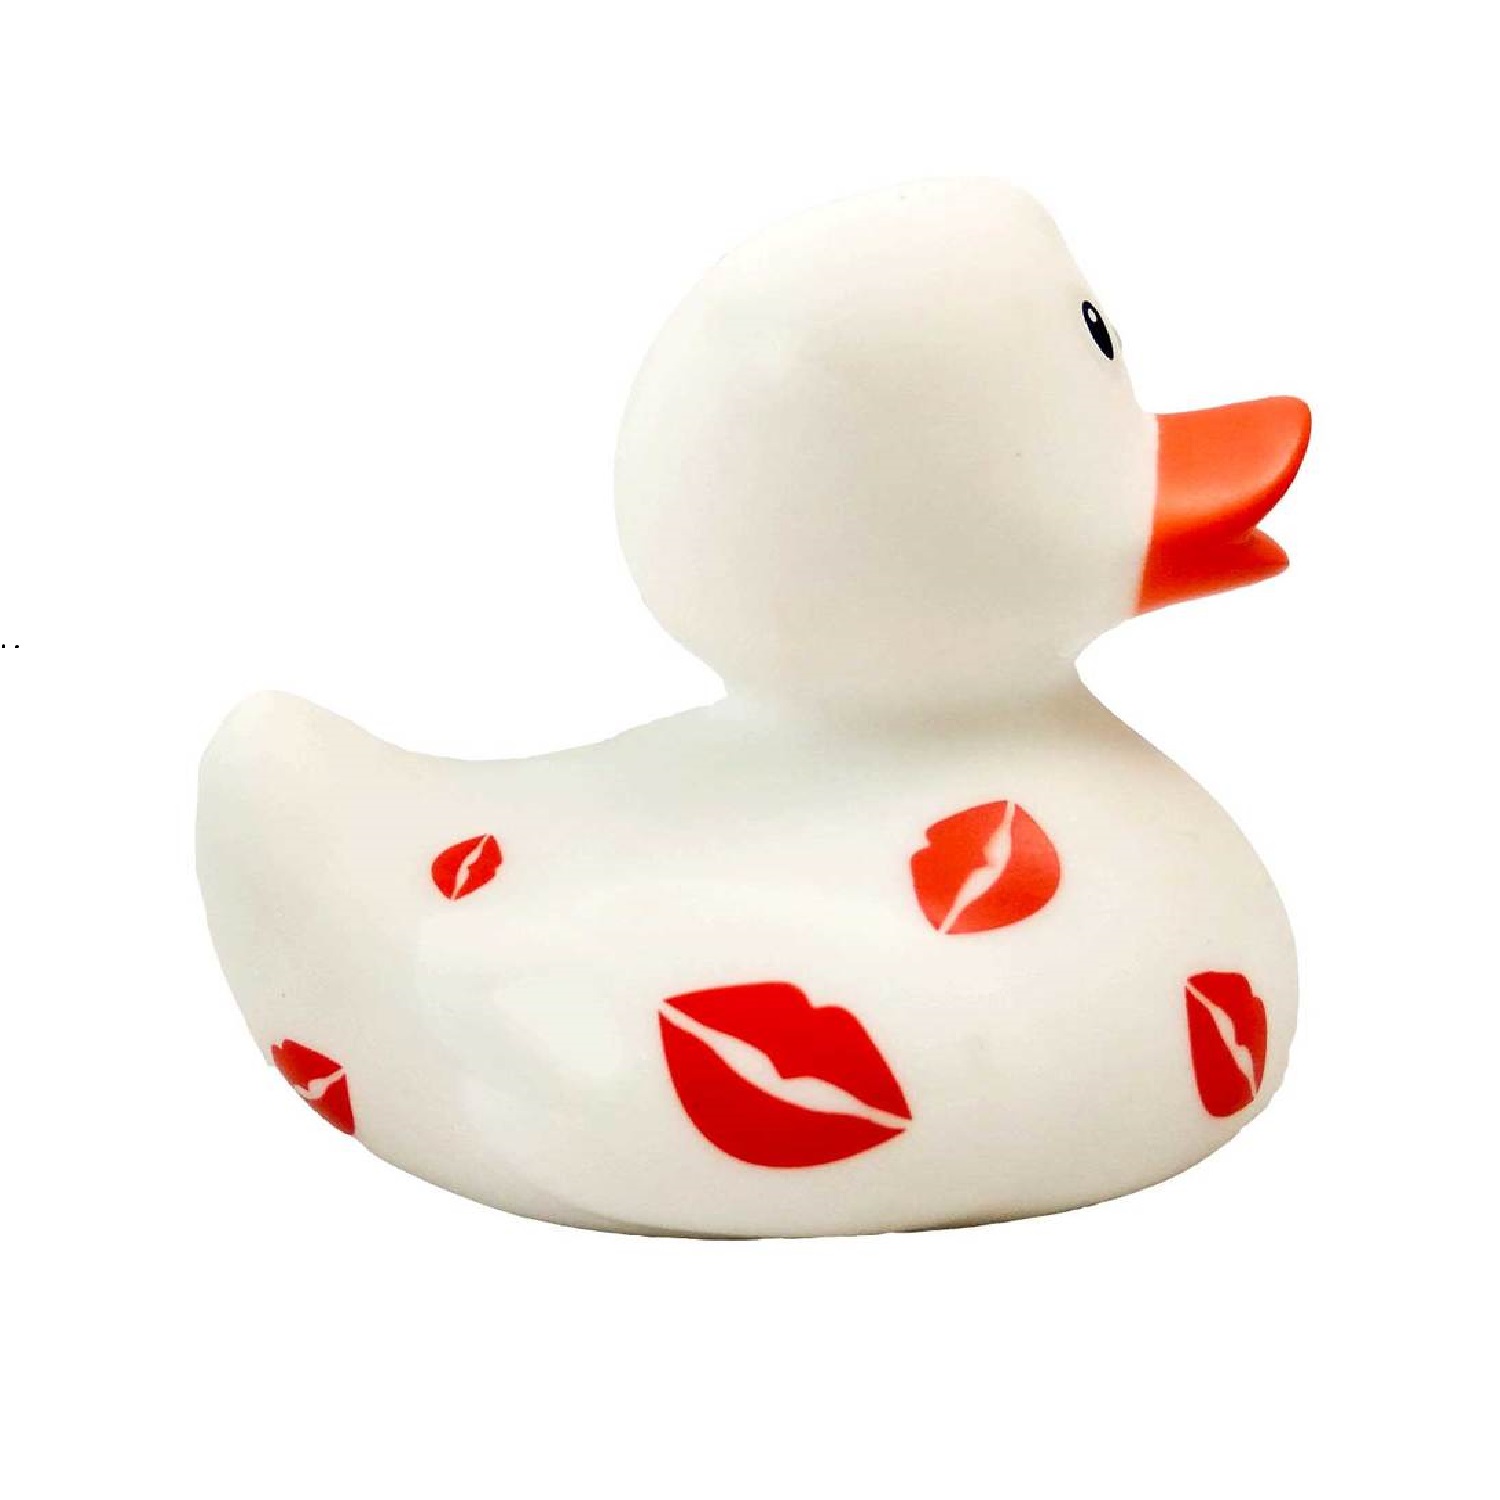 Игрушка Funny ducks для ванной Белая уточка с поцелуями 1995 - фото 3